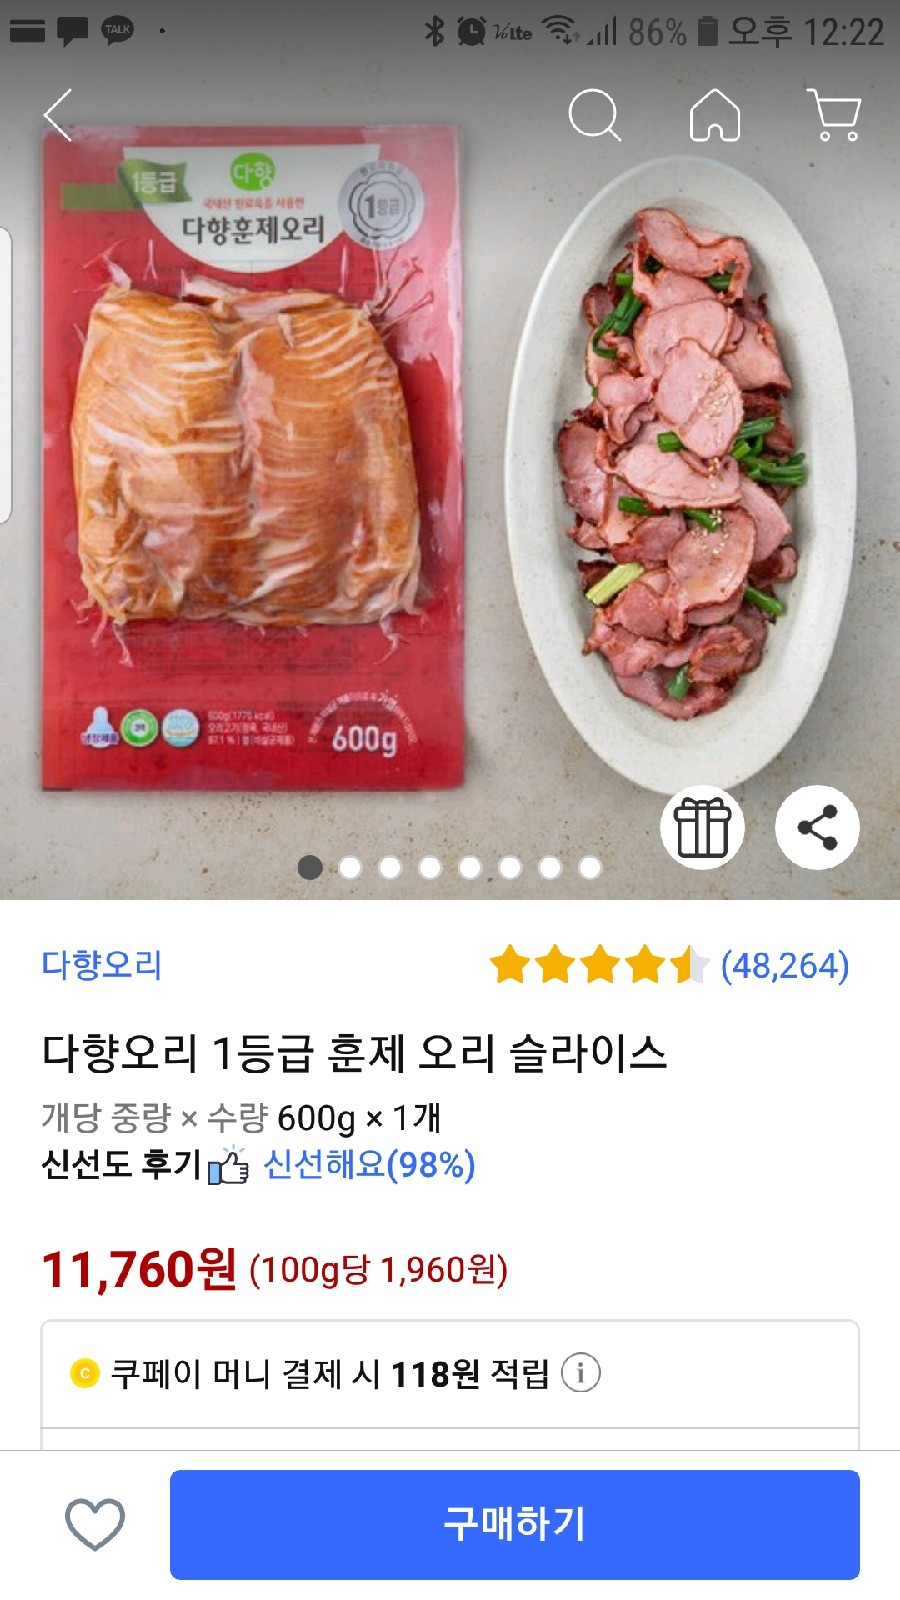 쿠팡 로켓프레시 1만원 할인쿠폰 구매금액제한 없음 대박~